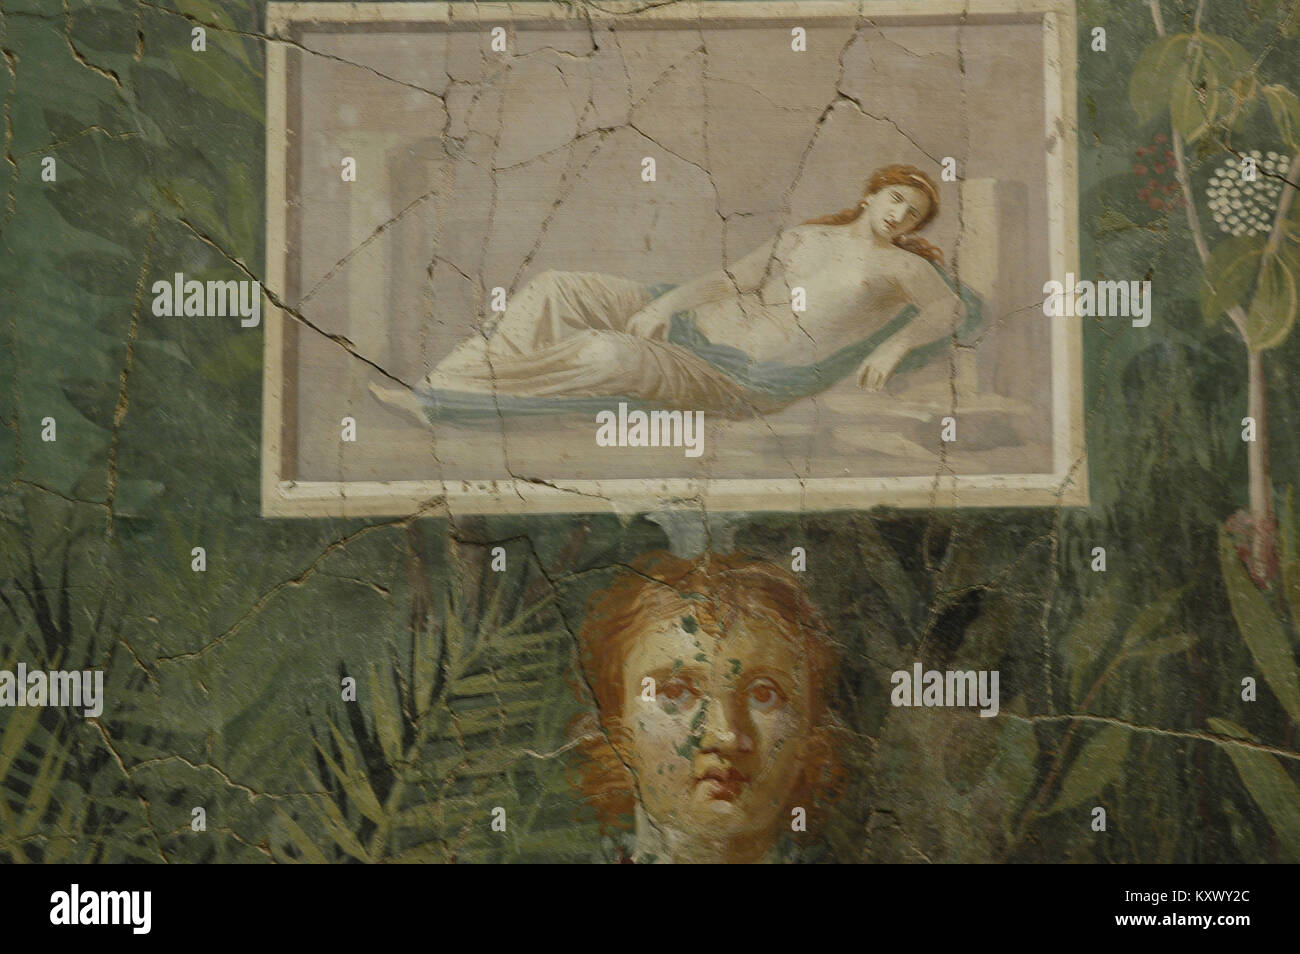 Oplontis and Boscoreale, fresco Pompeii, 2008, Rome, Italy. Stock Photo